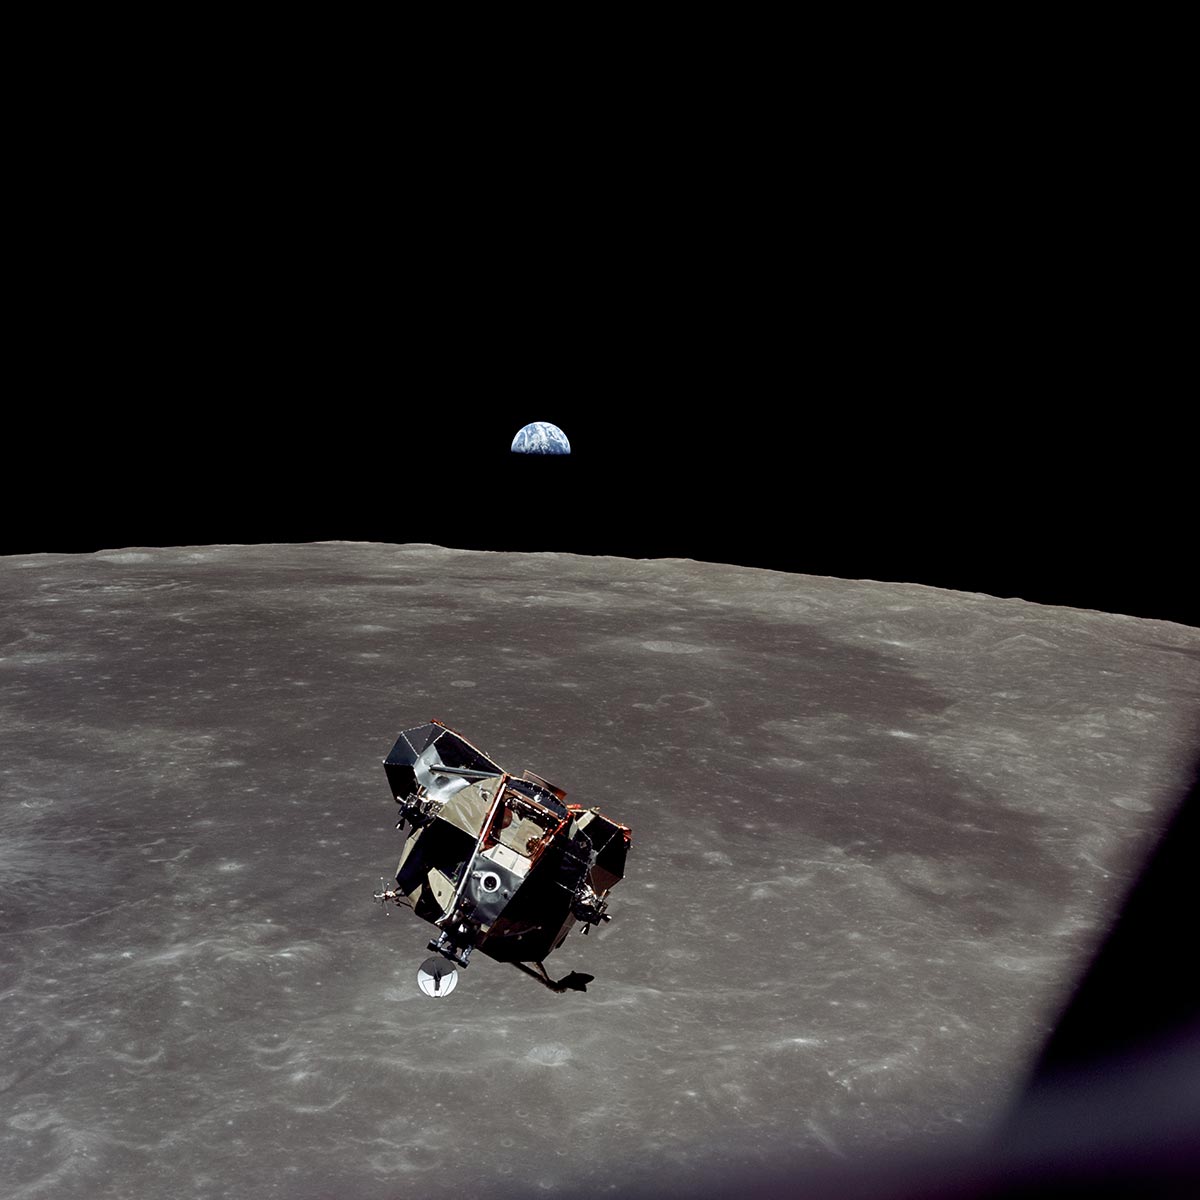 Una panoramica lunare con il LEM e la Terra fotografata da Michael Collins dell'Apollo 11